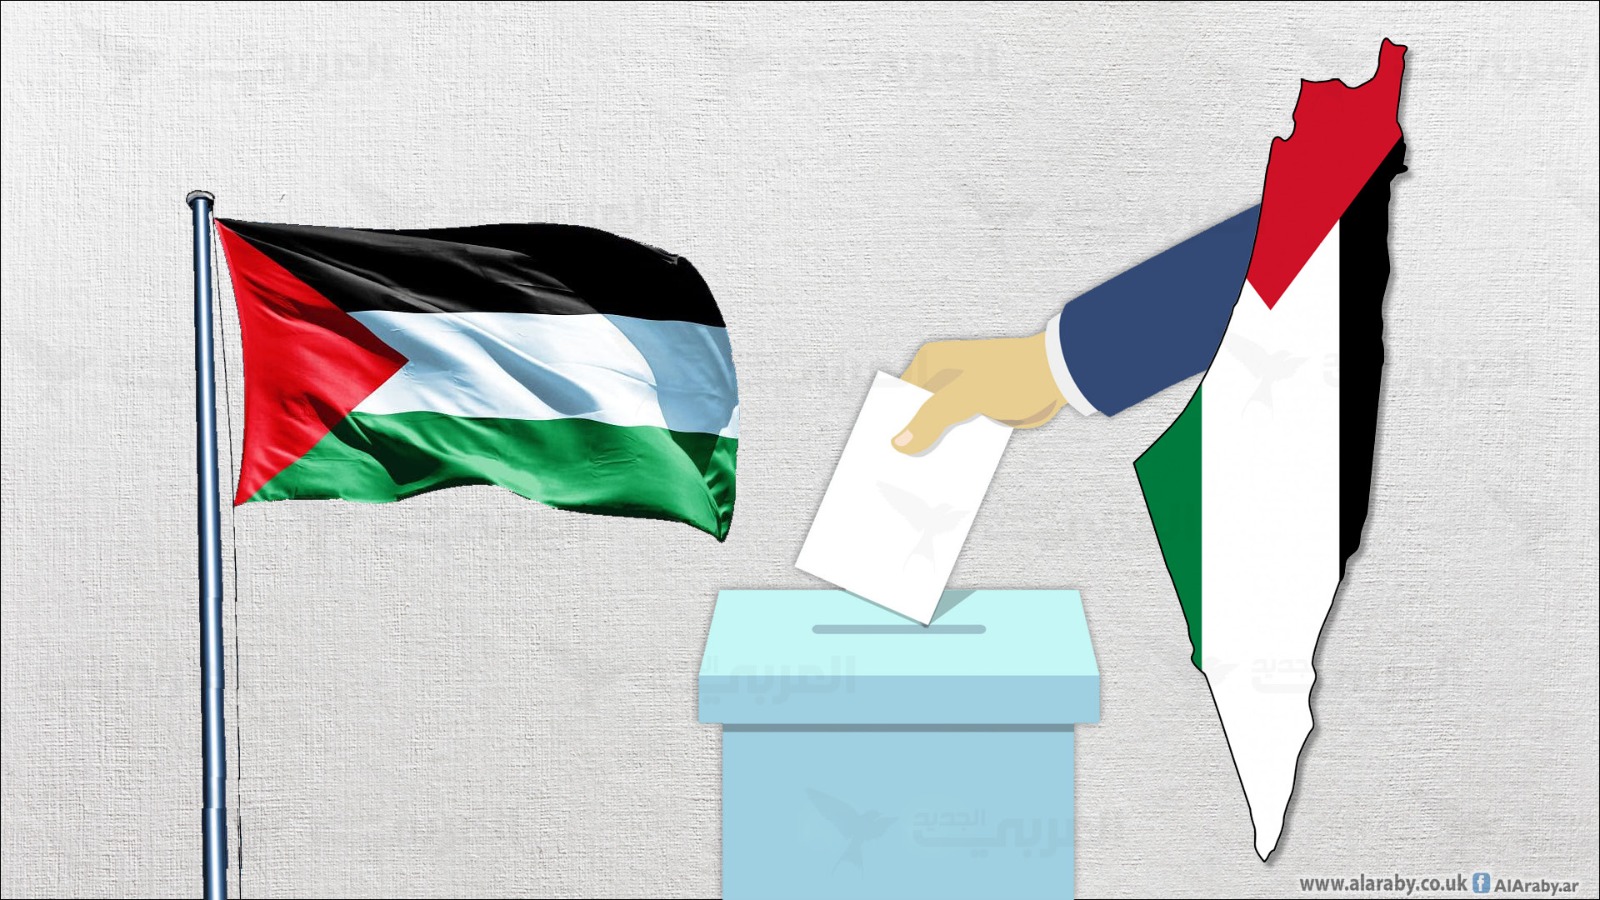 جلسة مفتوحة لمجلس الأمن لتيسير عراقيل الانتخابات الفلسطينية